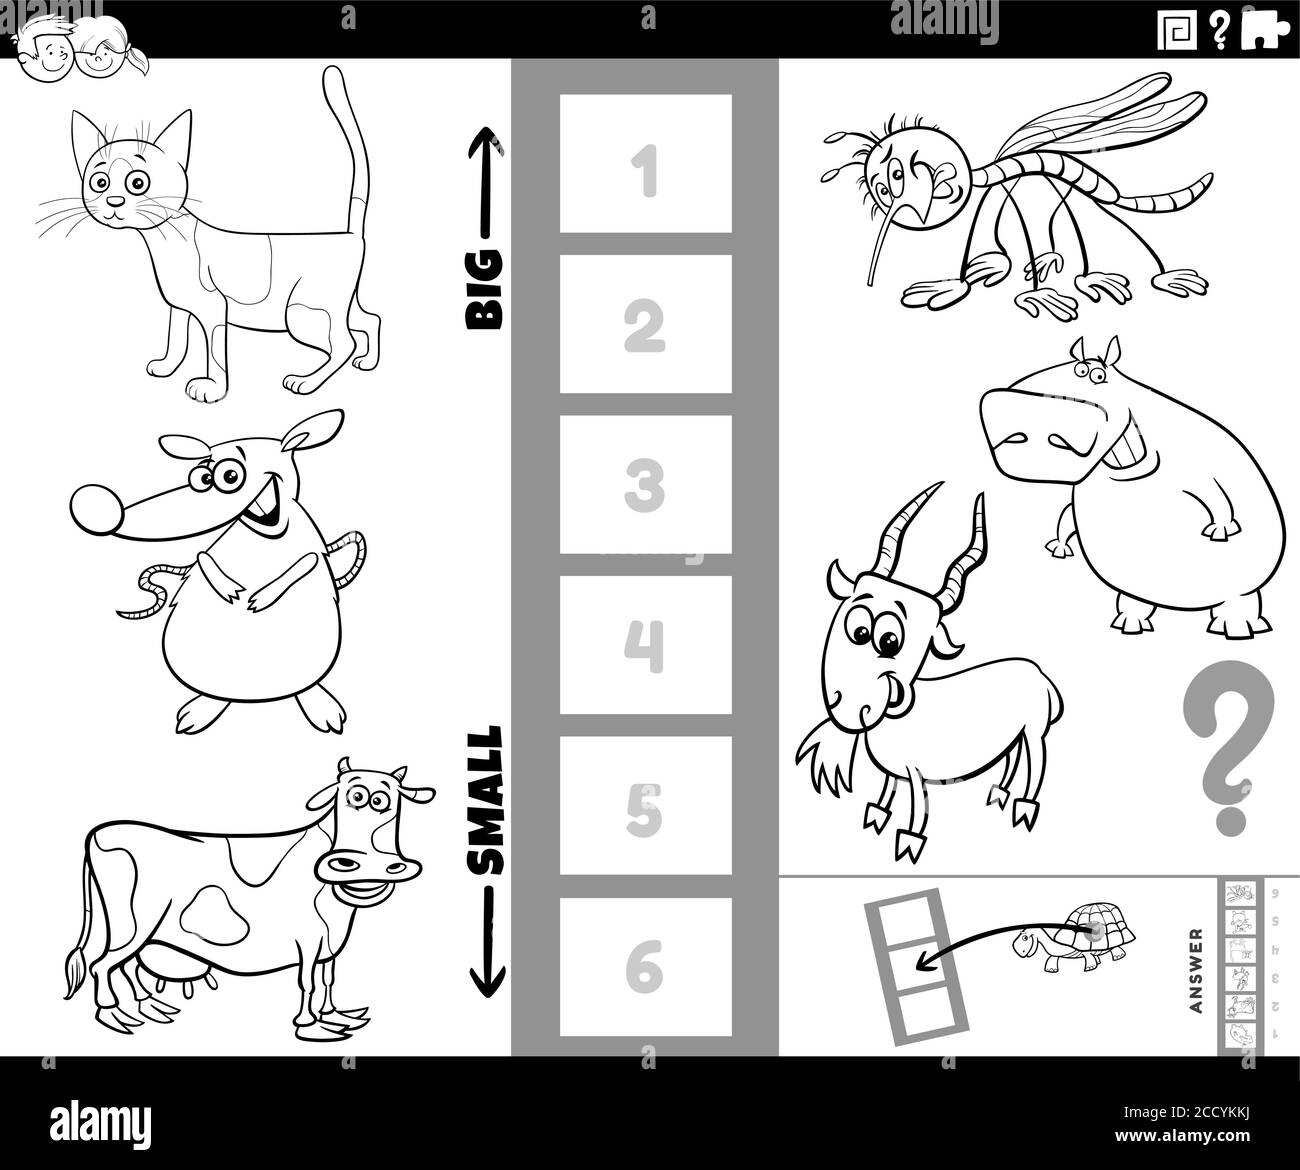 Dessin animé noir et blanc Illustration du jeu éducatif de trouver le plus gros et le plus petit animal espèces avec des personnages de comic pour les enfants Colo Illustration de Vecteur